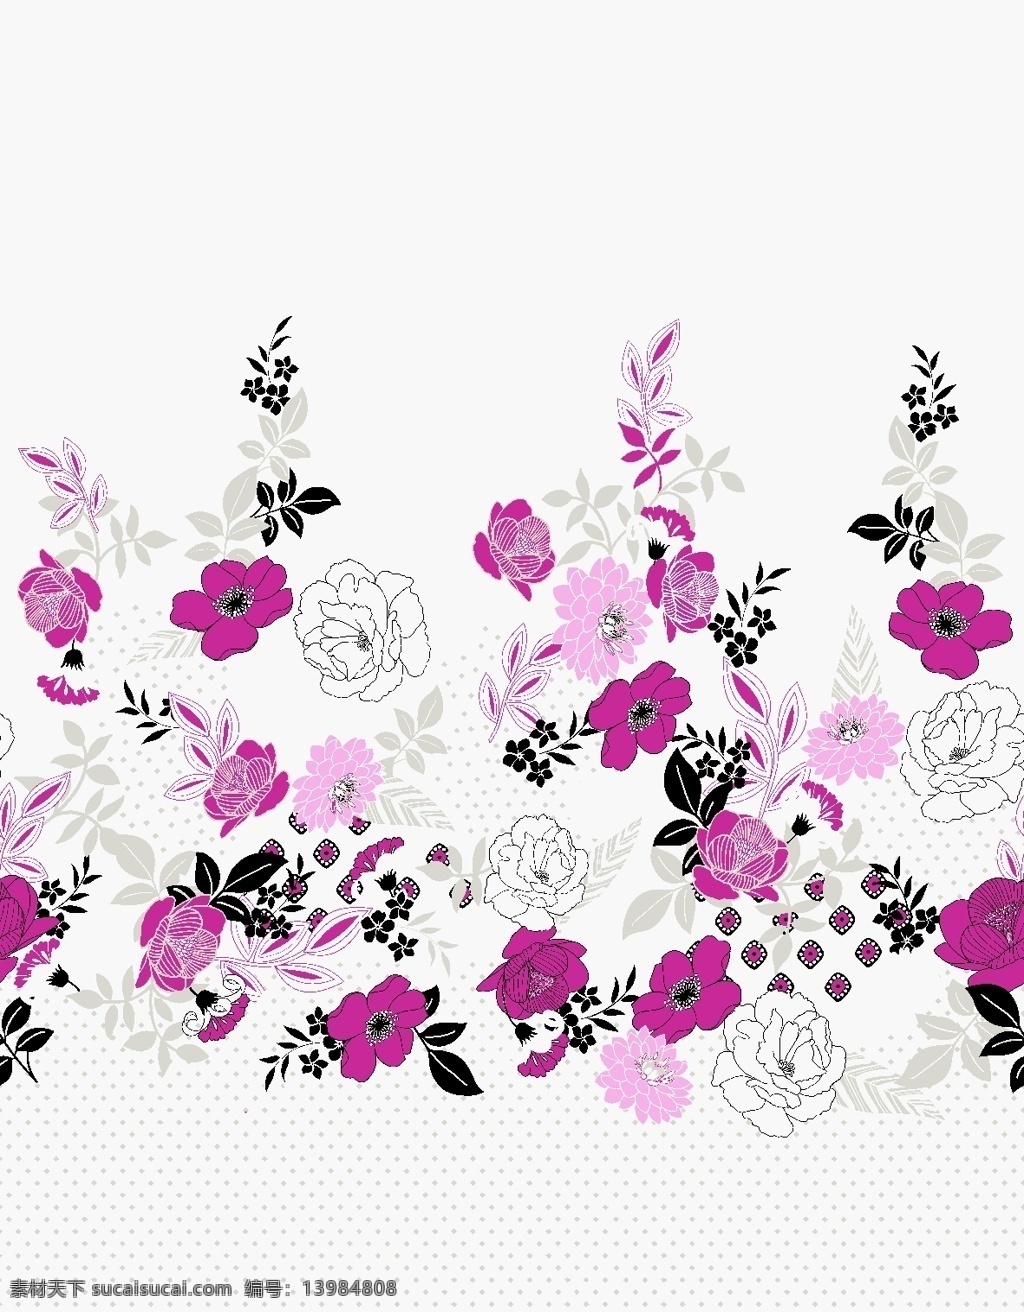 面料 墙纸 花纹 面料设计 墙纸设计 服装面料 花卉 植物 现代纹 底纹 花边花纹 底纹边框